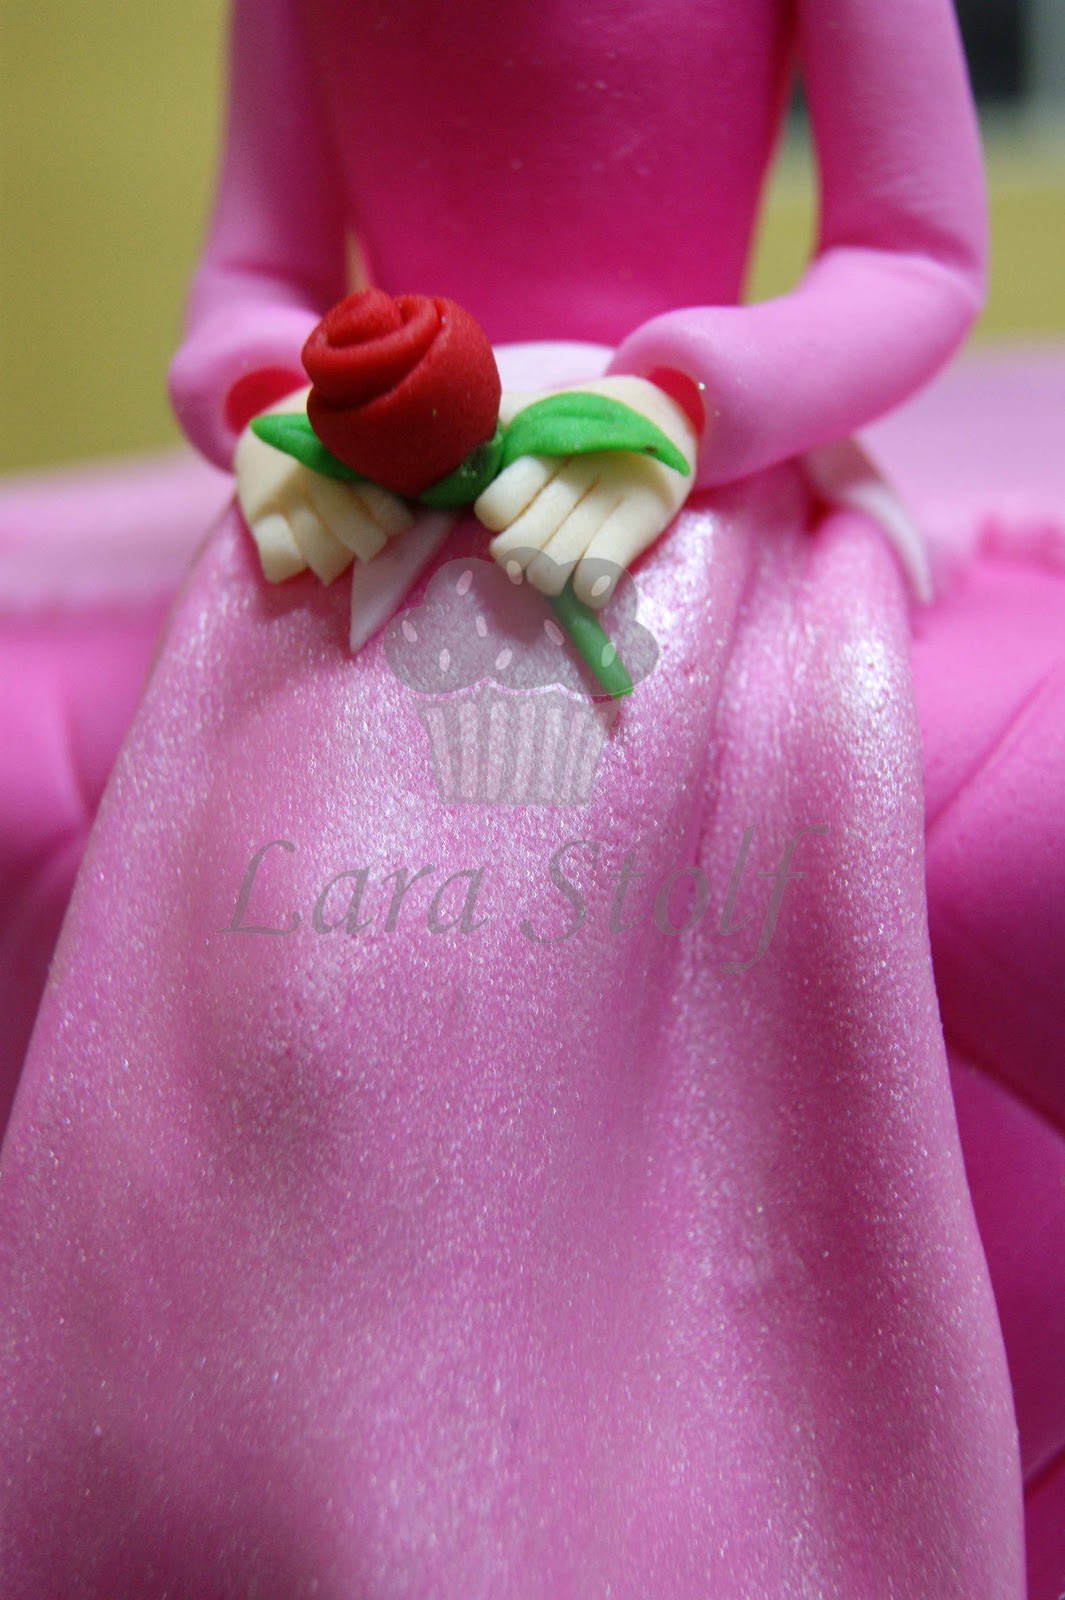 Lara Stolf Arte em Açucar: Bolo Princesa Rosa e Dourado (Princess cake)